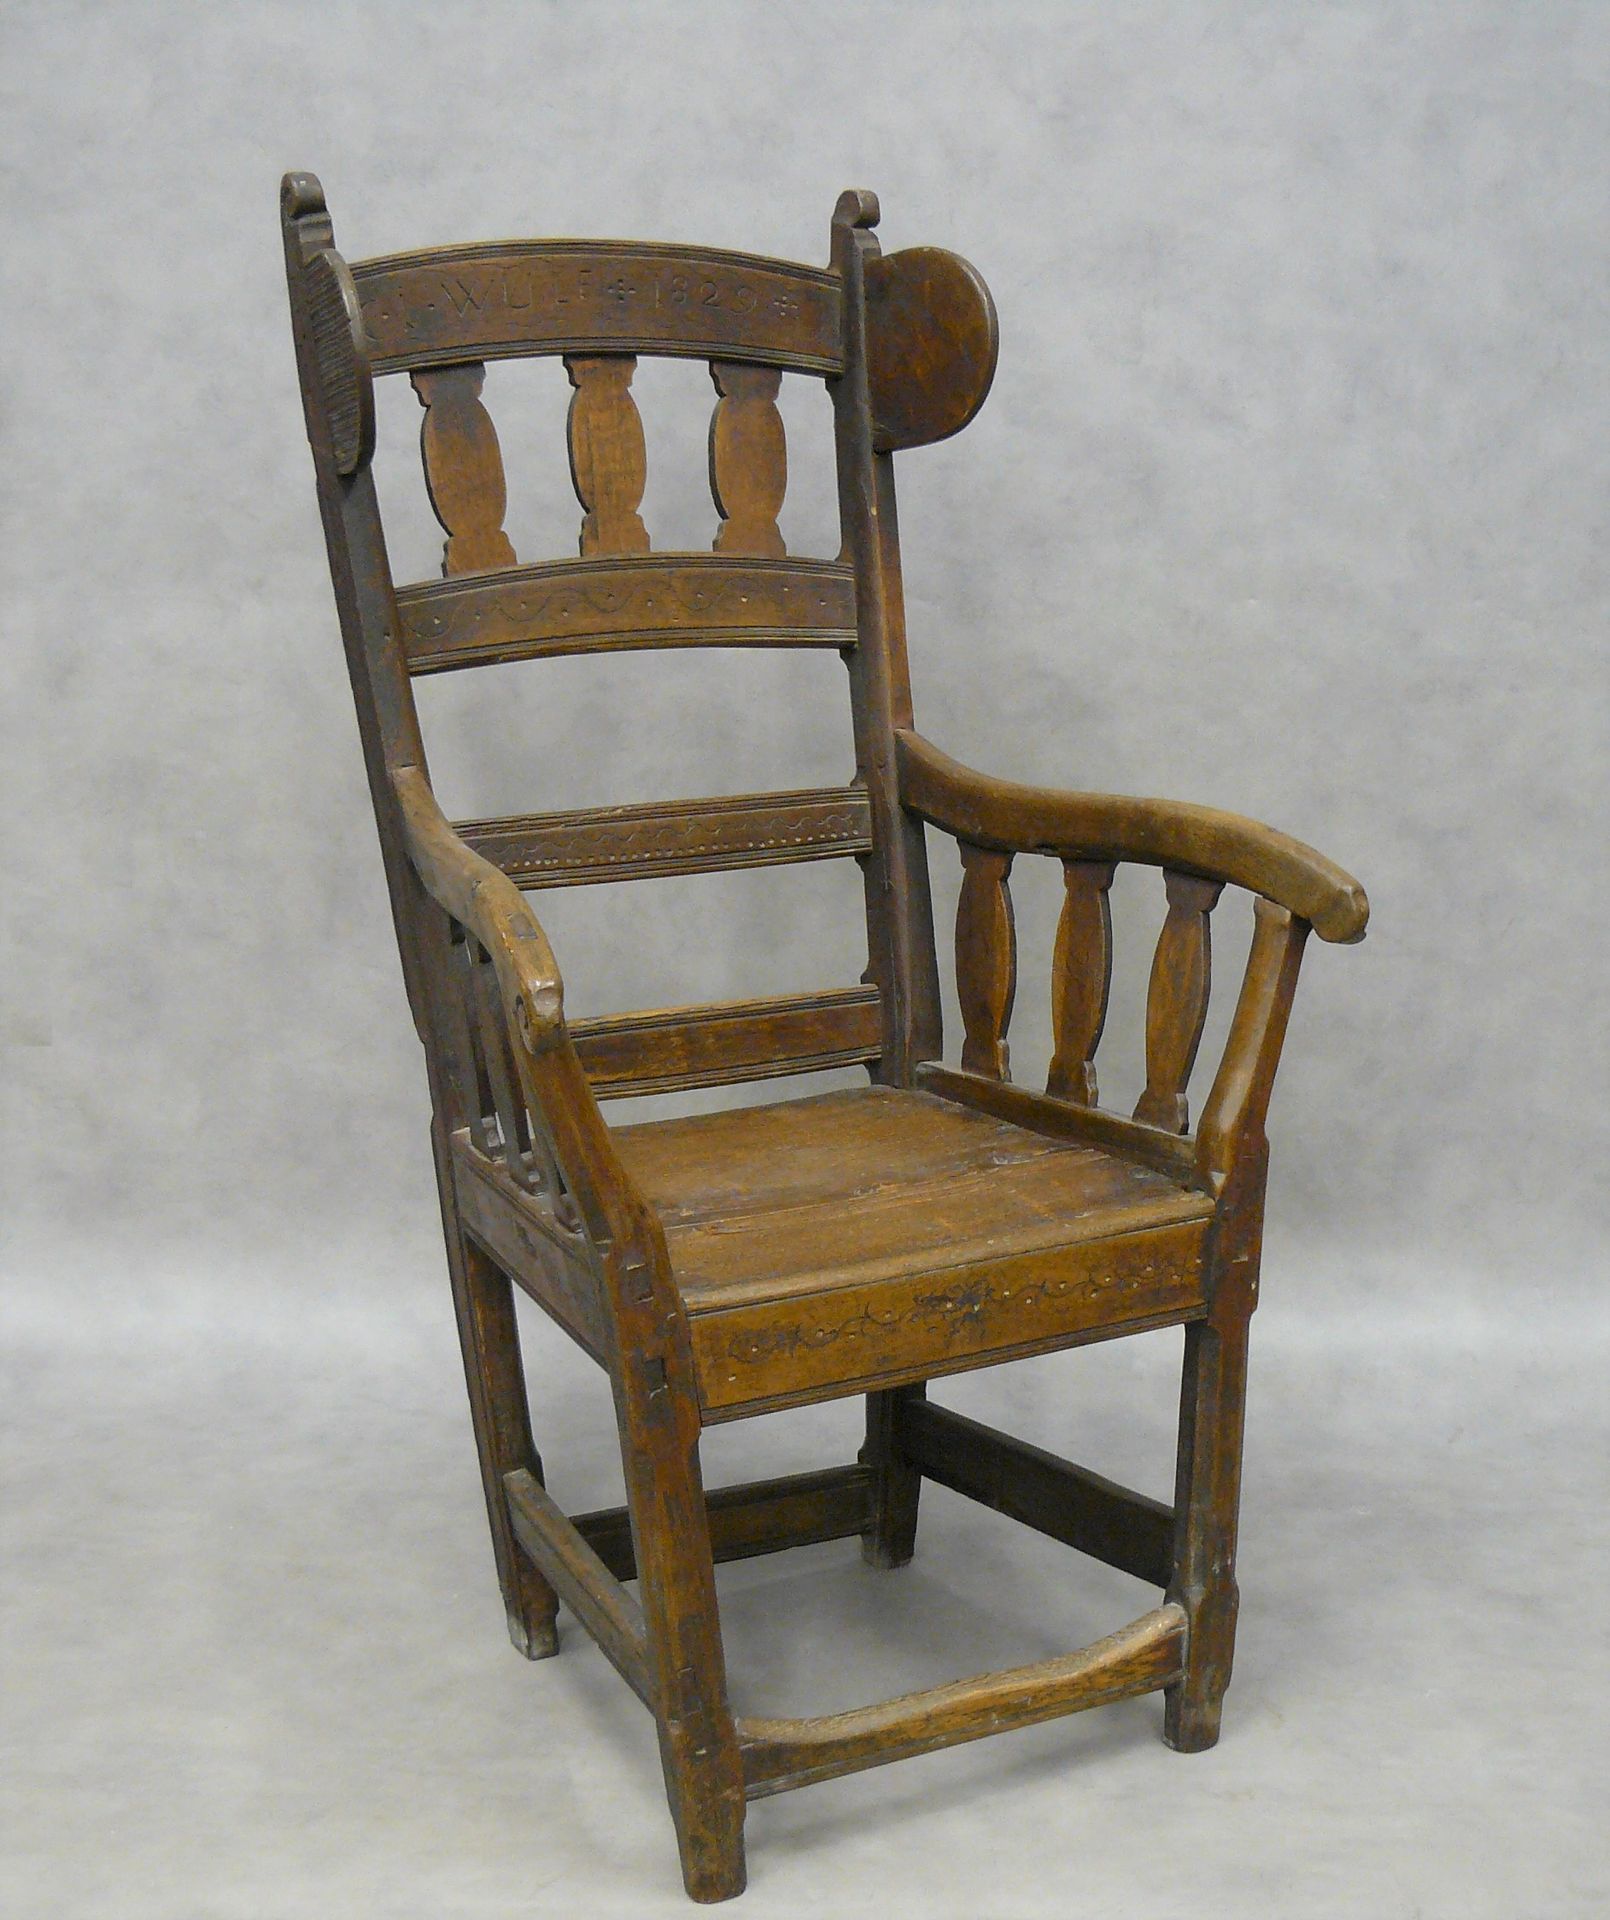 Null un sillón con orejas en madera natural, los brazos extendidos y el respaldo&hellip;